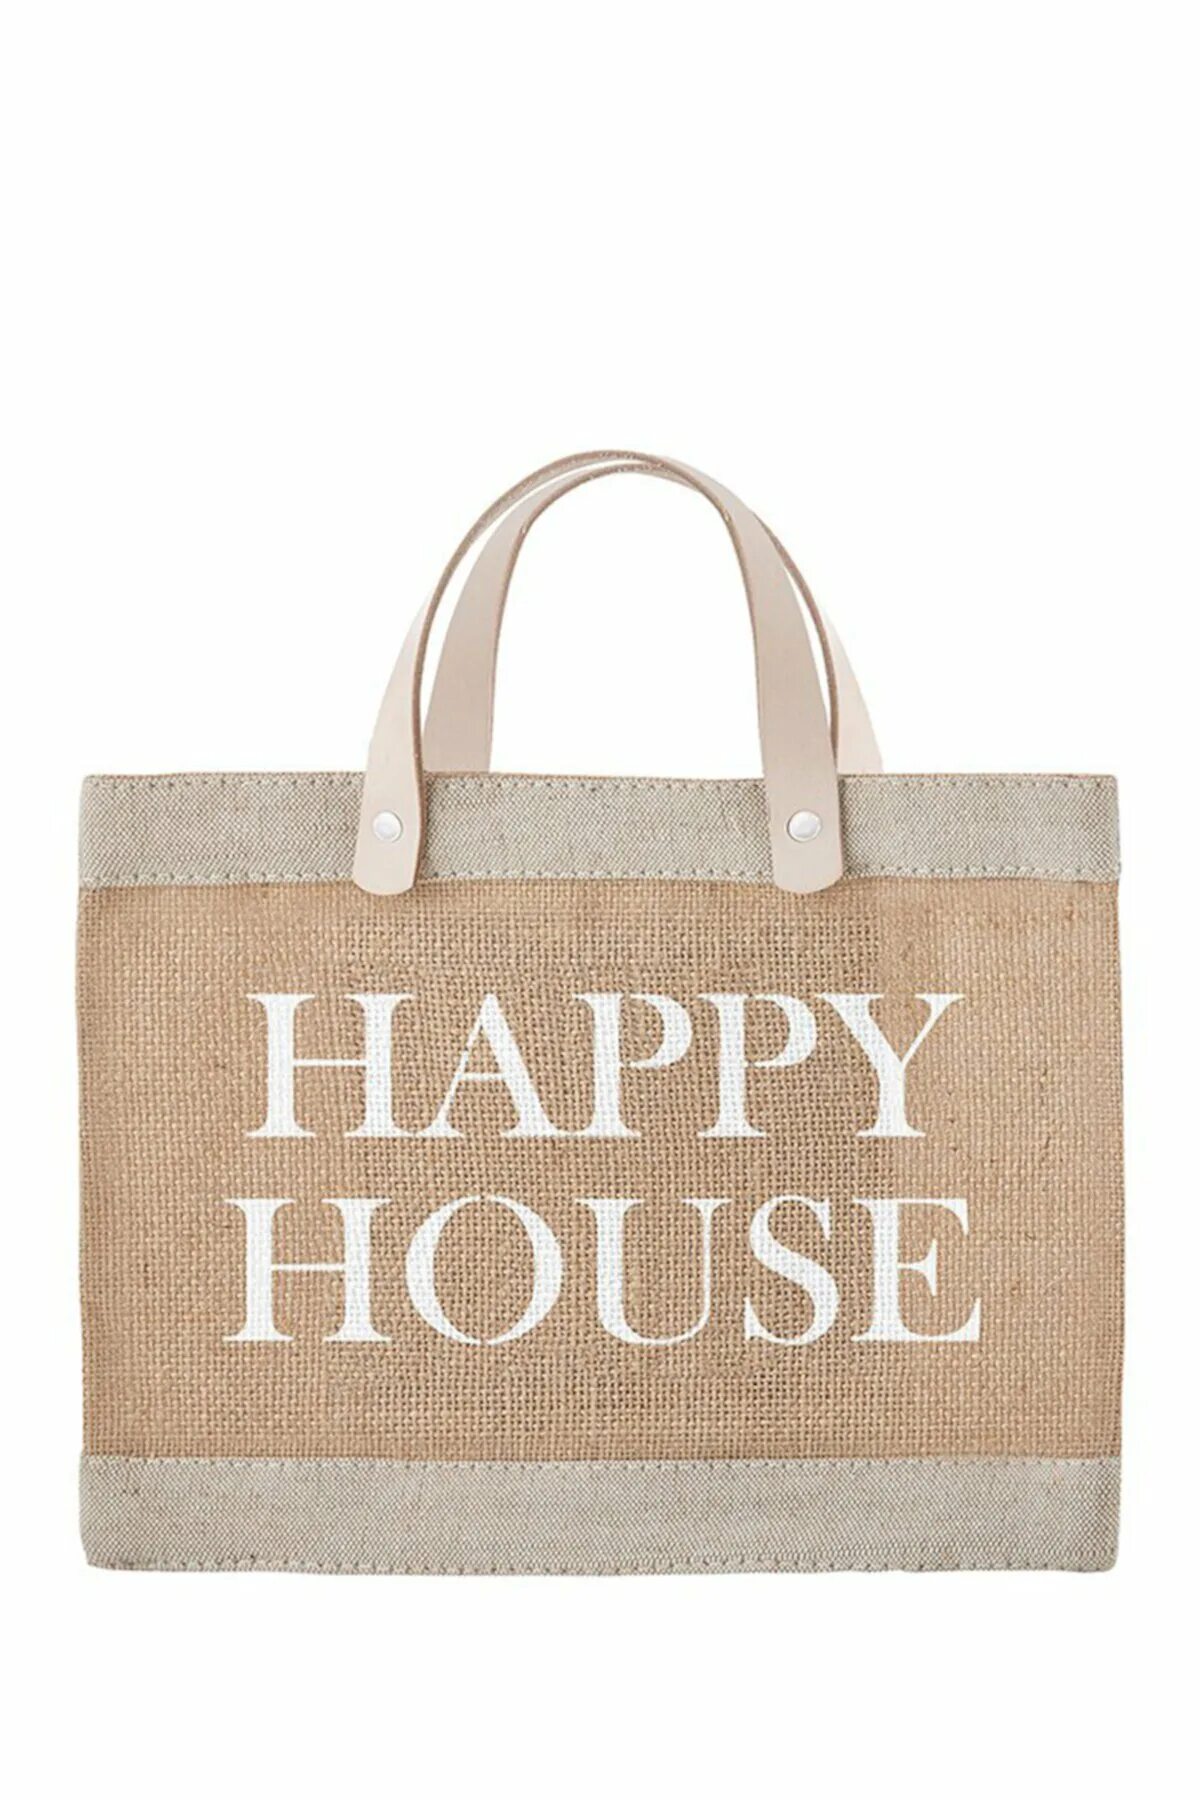 Сумка House. Пакет Happy House. Хэппи Хаус сумка. Сумка House brand. Happy house me